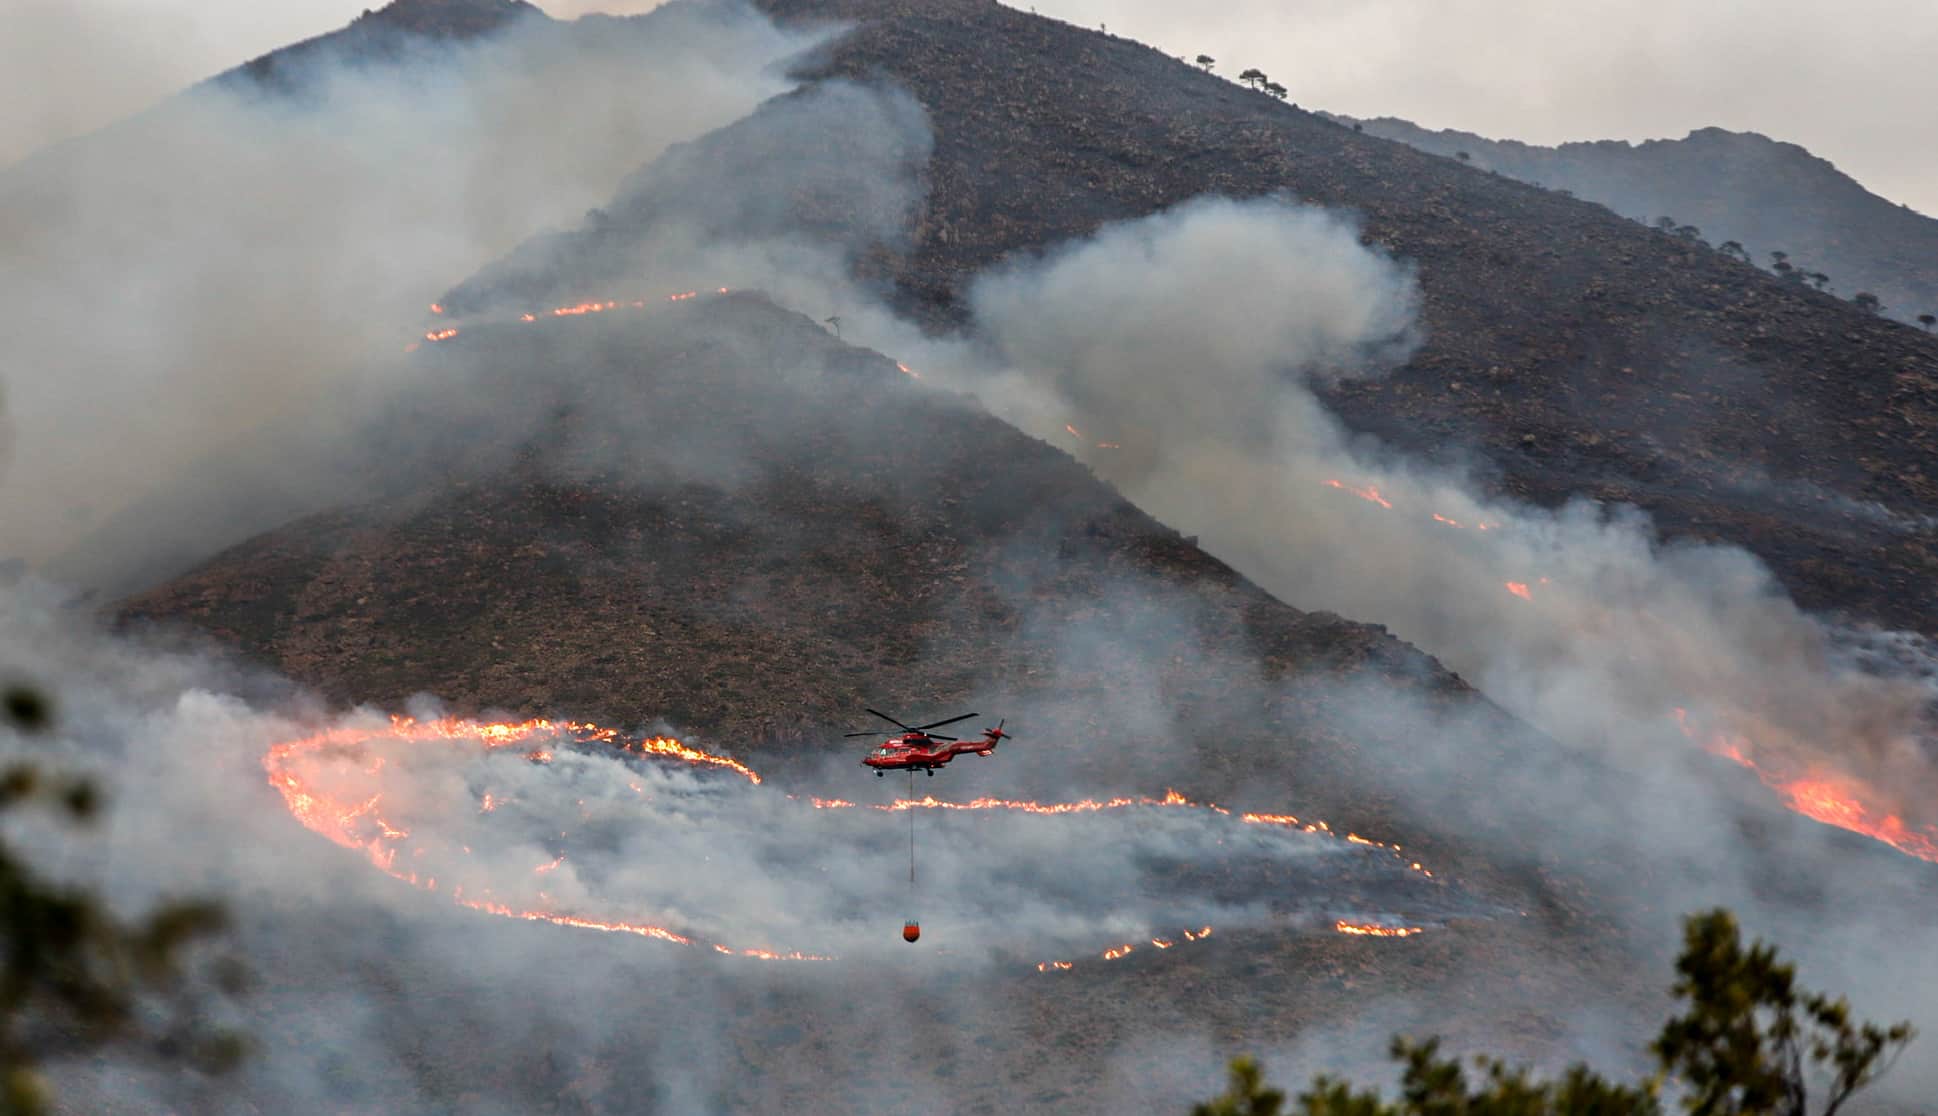 Helicóptero contra incendio intentando apagar el fuego de la Sierra Bermeja, visto desde el cerro de la Silla de los Huesos